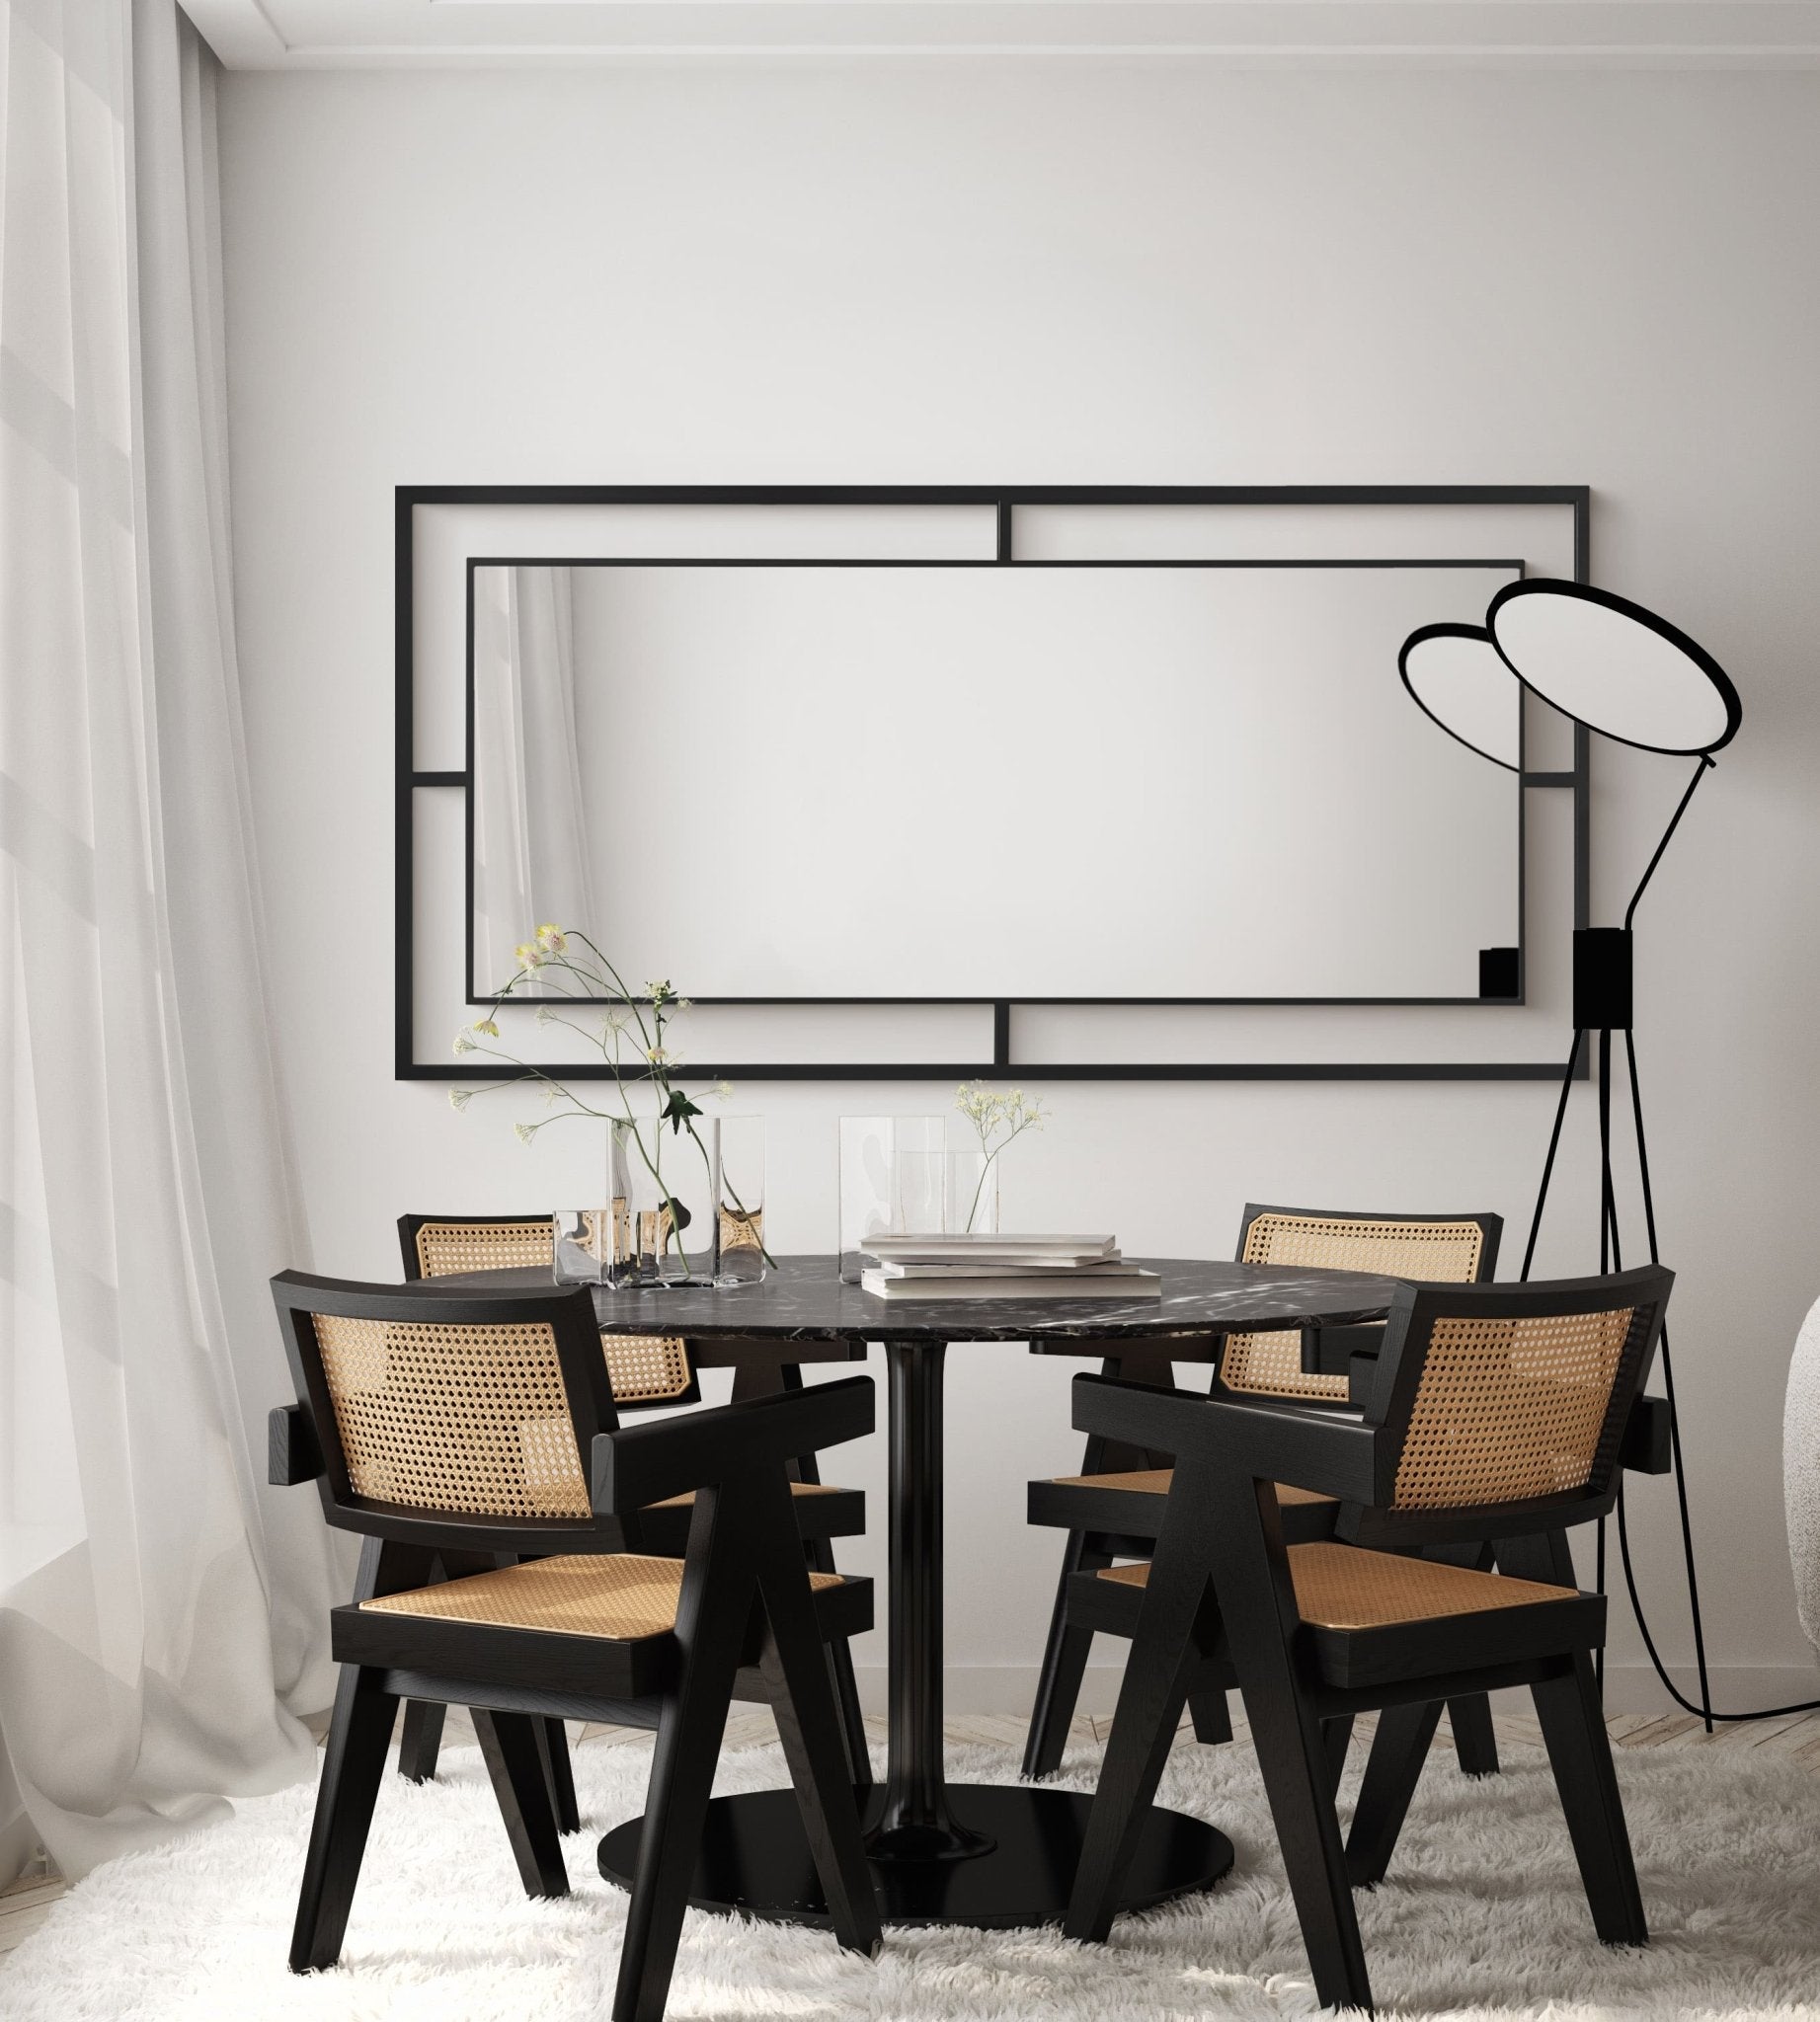 Framed Mirror No. 1 | Großer Spiegel mit Eisenrahmen | 180 × 80 cm. - Blossholm